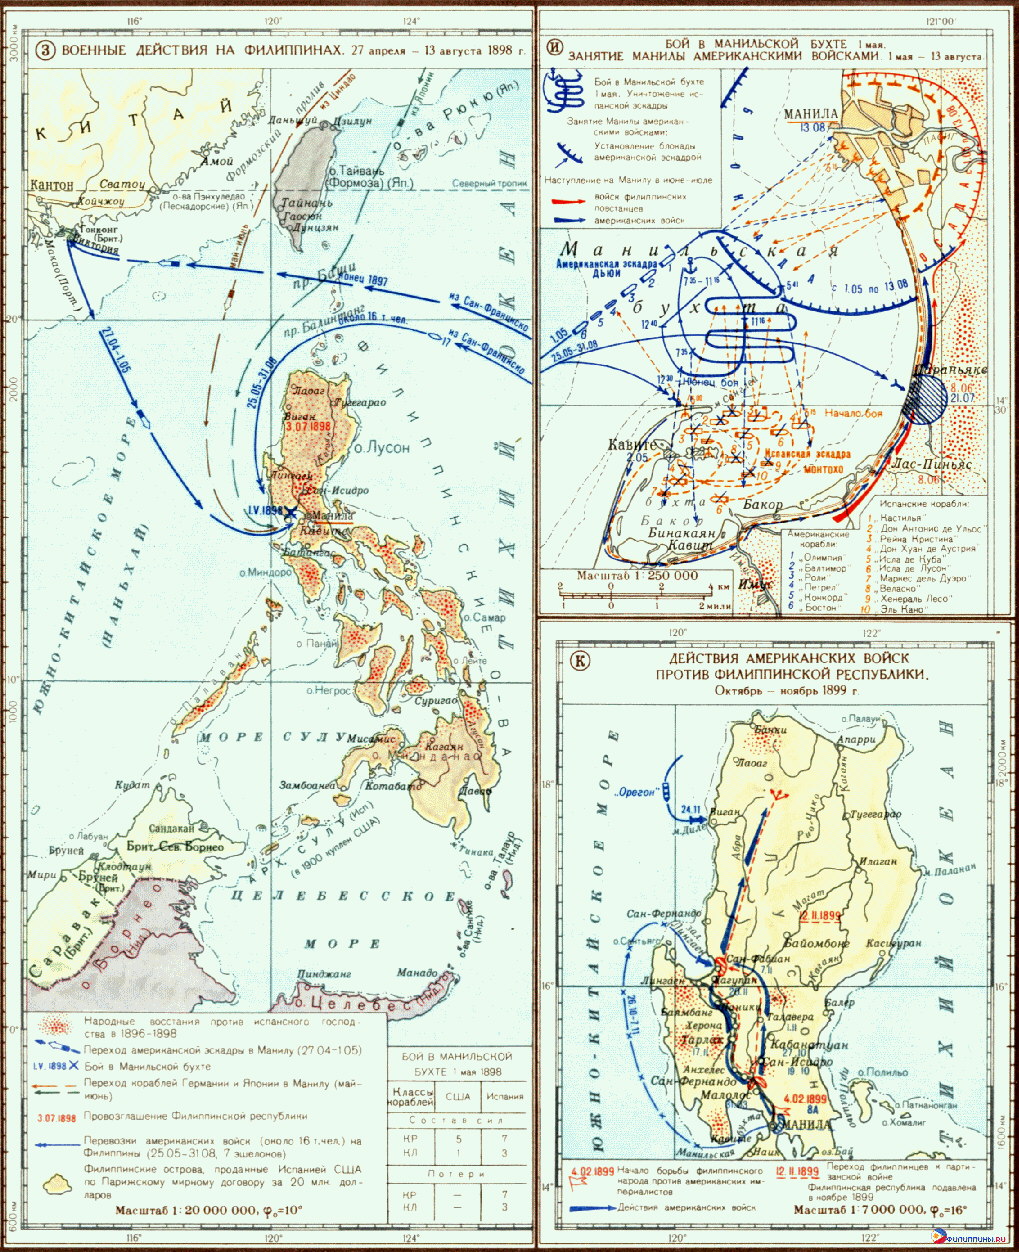 Карты событий испано-американской войны на Филиппинах (1898 г.) и филиппино-американской войны (1899 г.) из Морского атласа Минобороны СССР